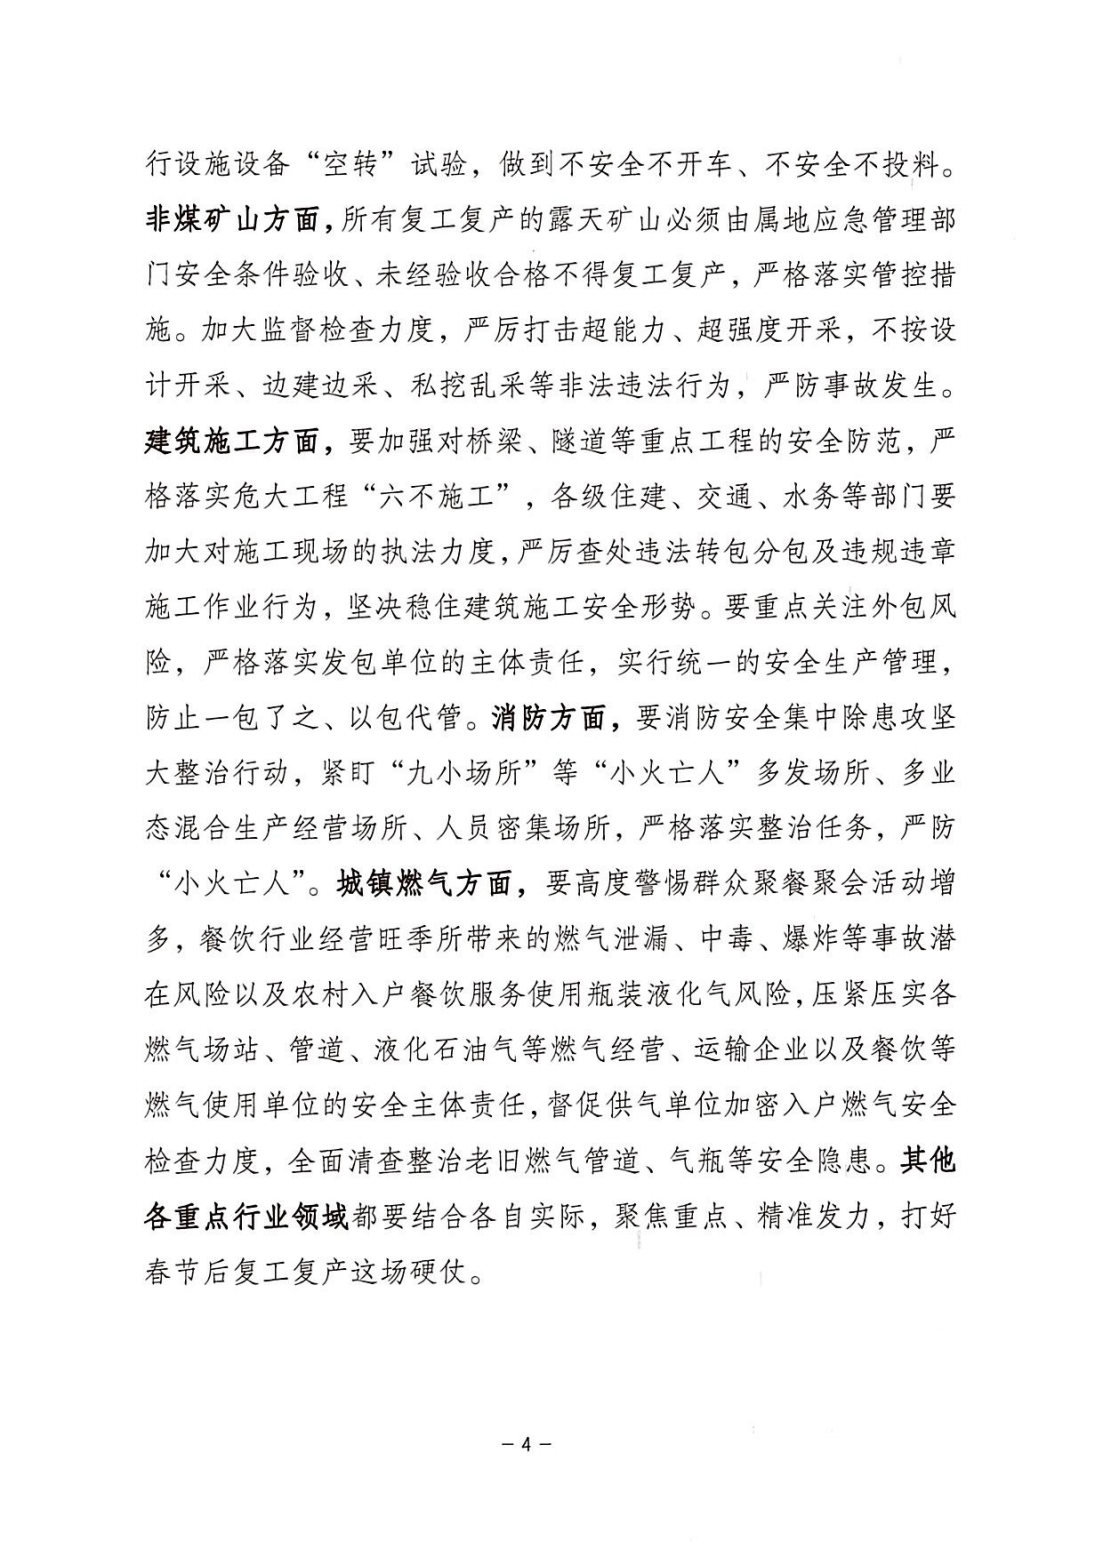 潮州市安全生产委员会办公室关于做好春节后复工复产安全生产工作的提醒函_03.png